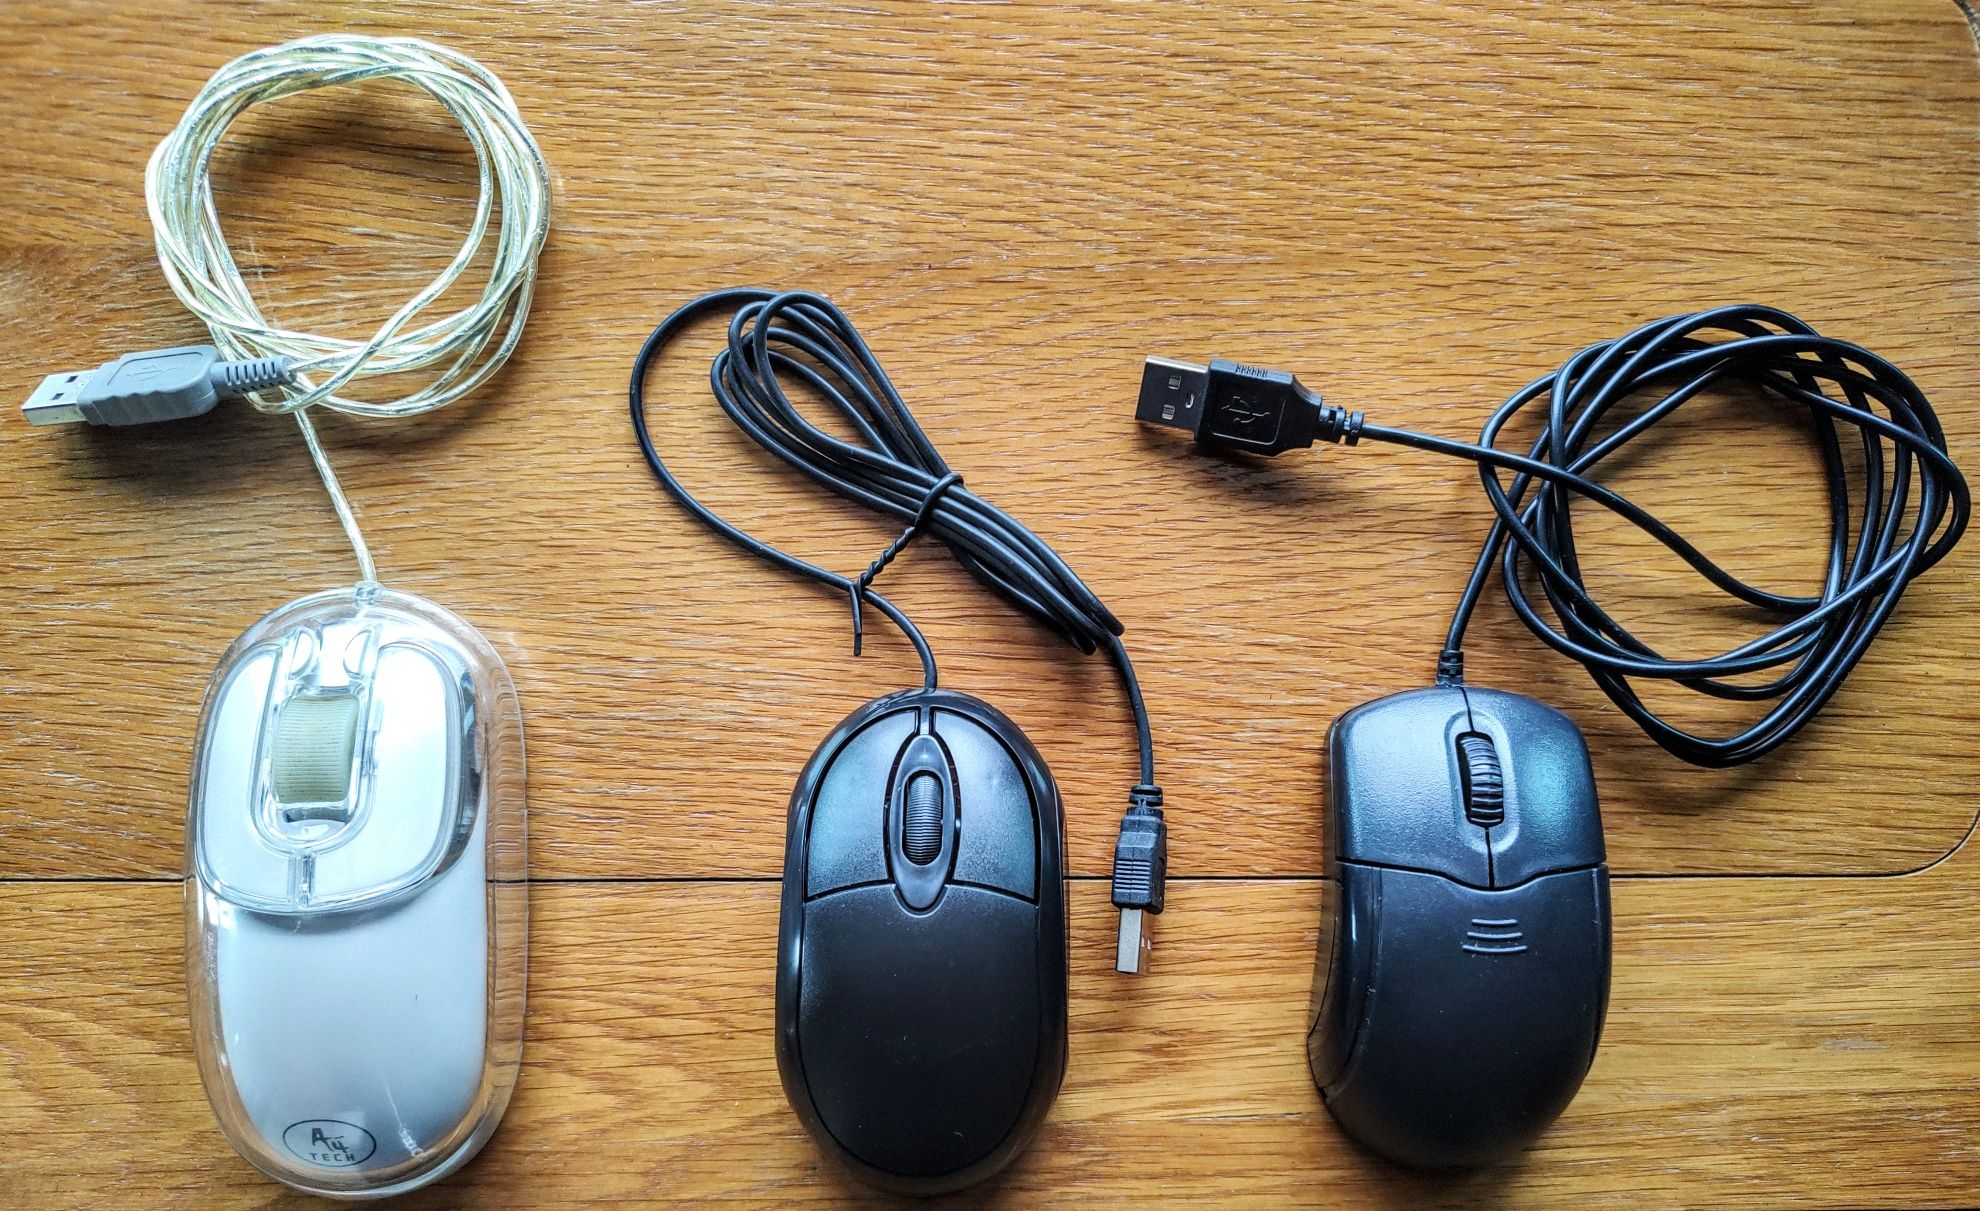 Kit-uri tastatura si mouse, boxe, router wi-fi